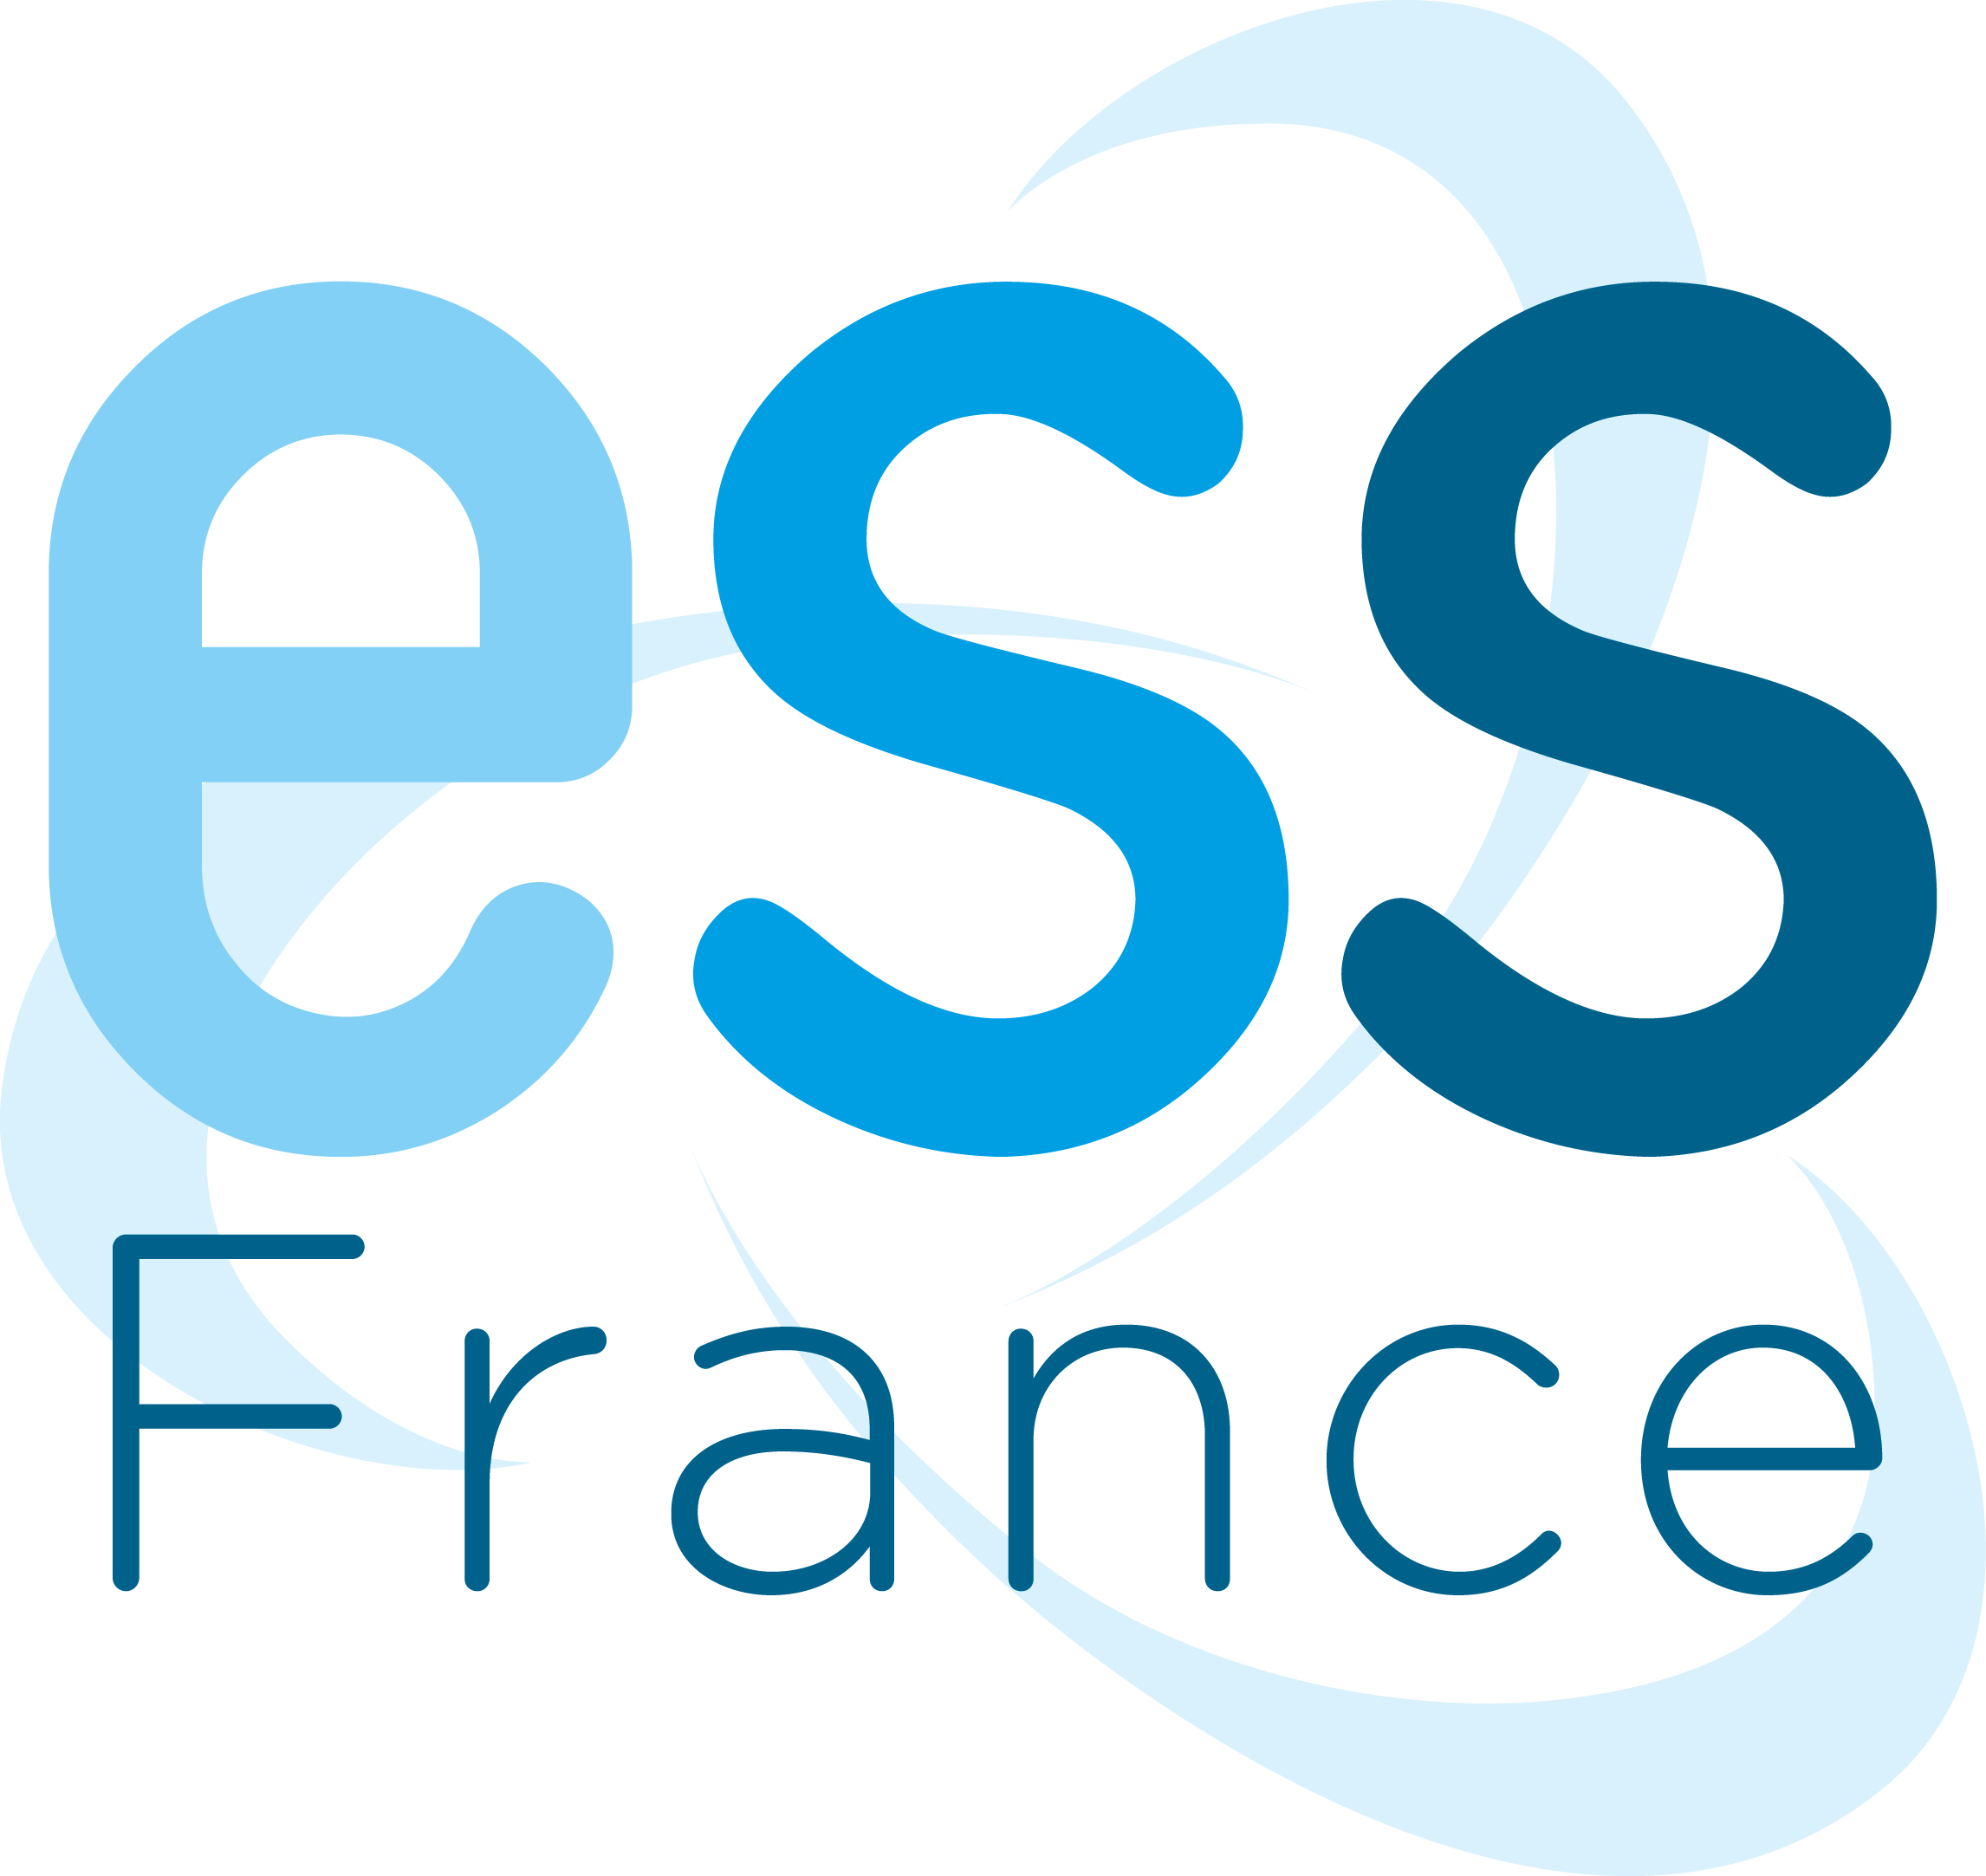 Présidentielle : les propositions d'ESS France